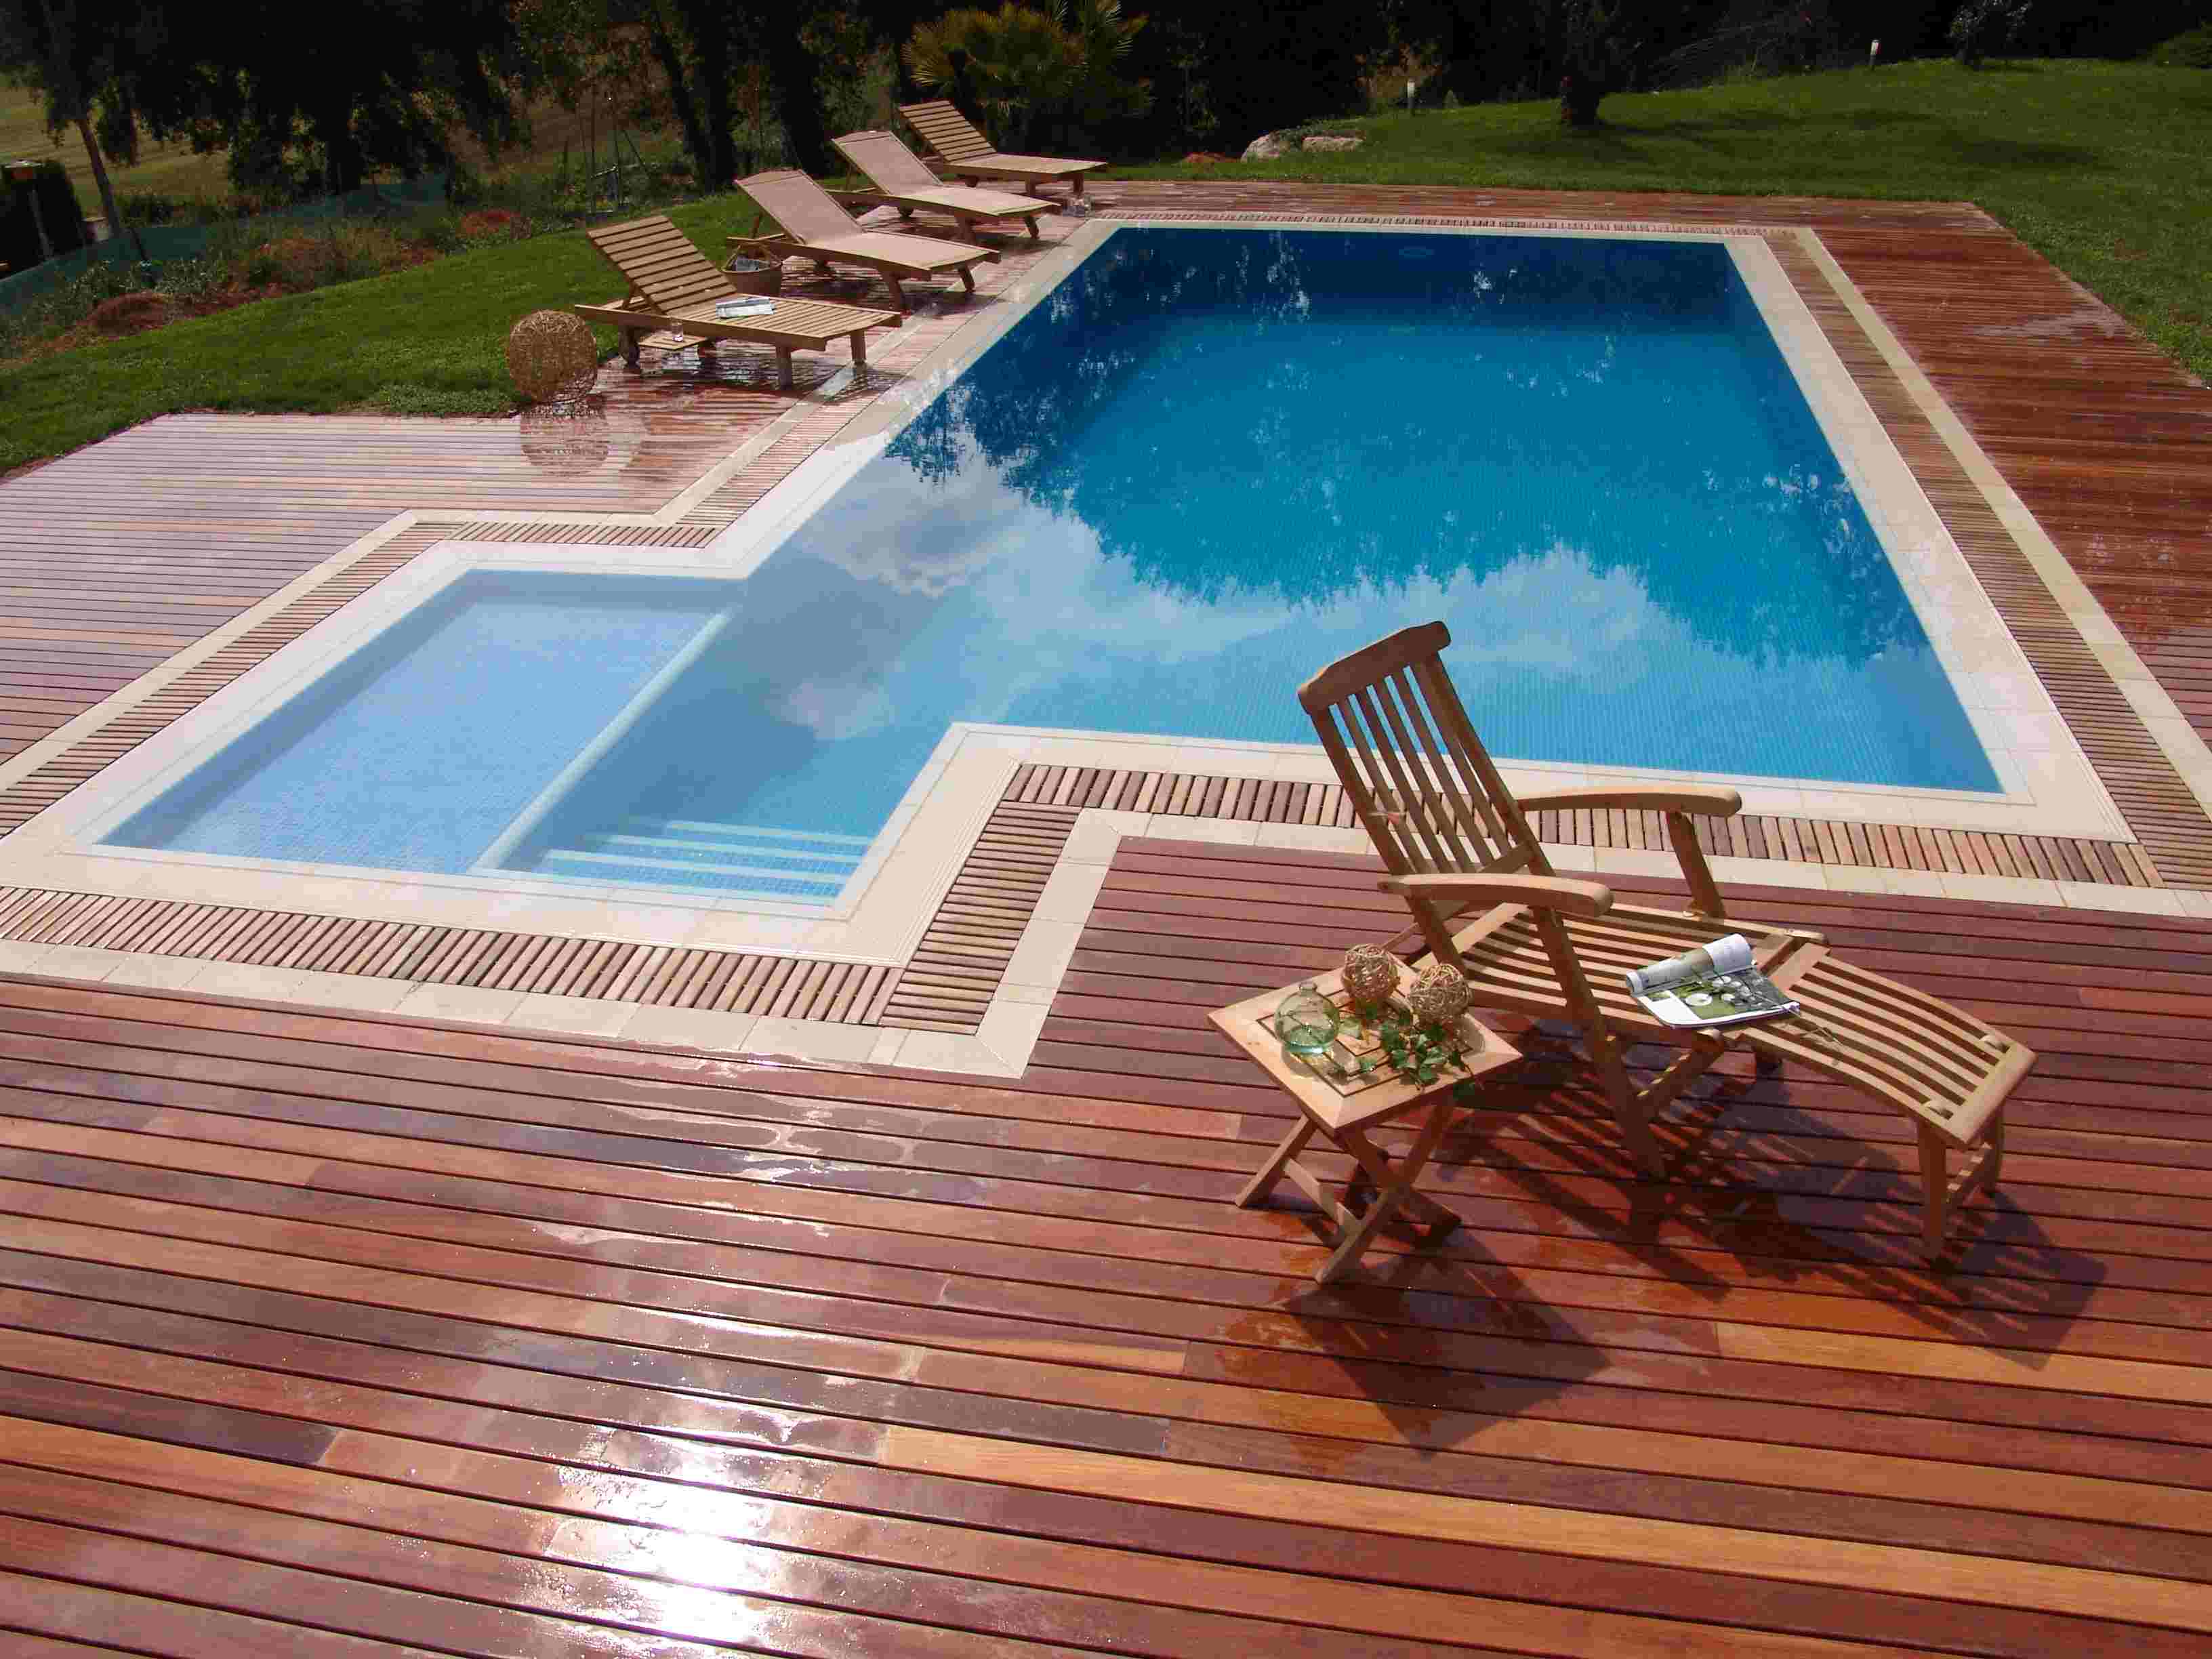 Piso de madeira para deck de piscina de vinil